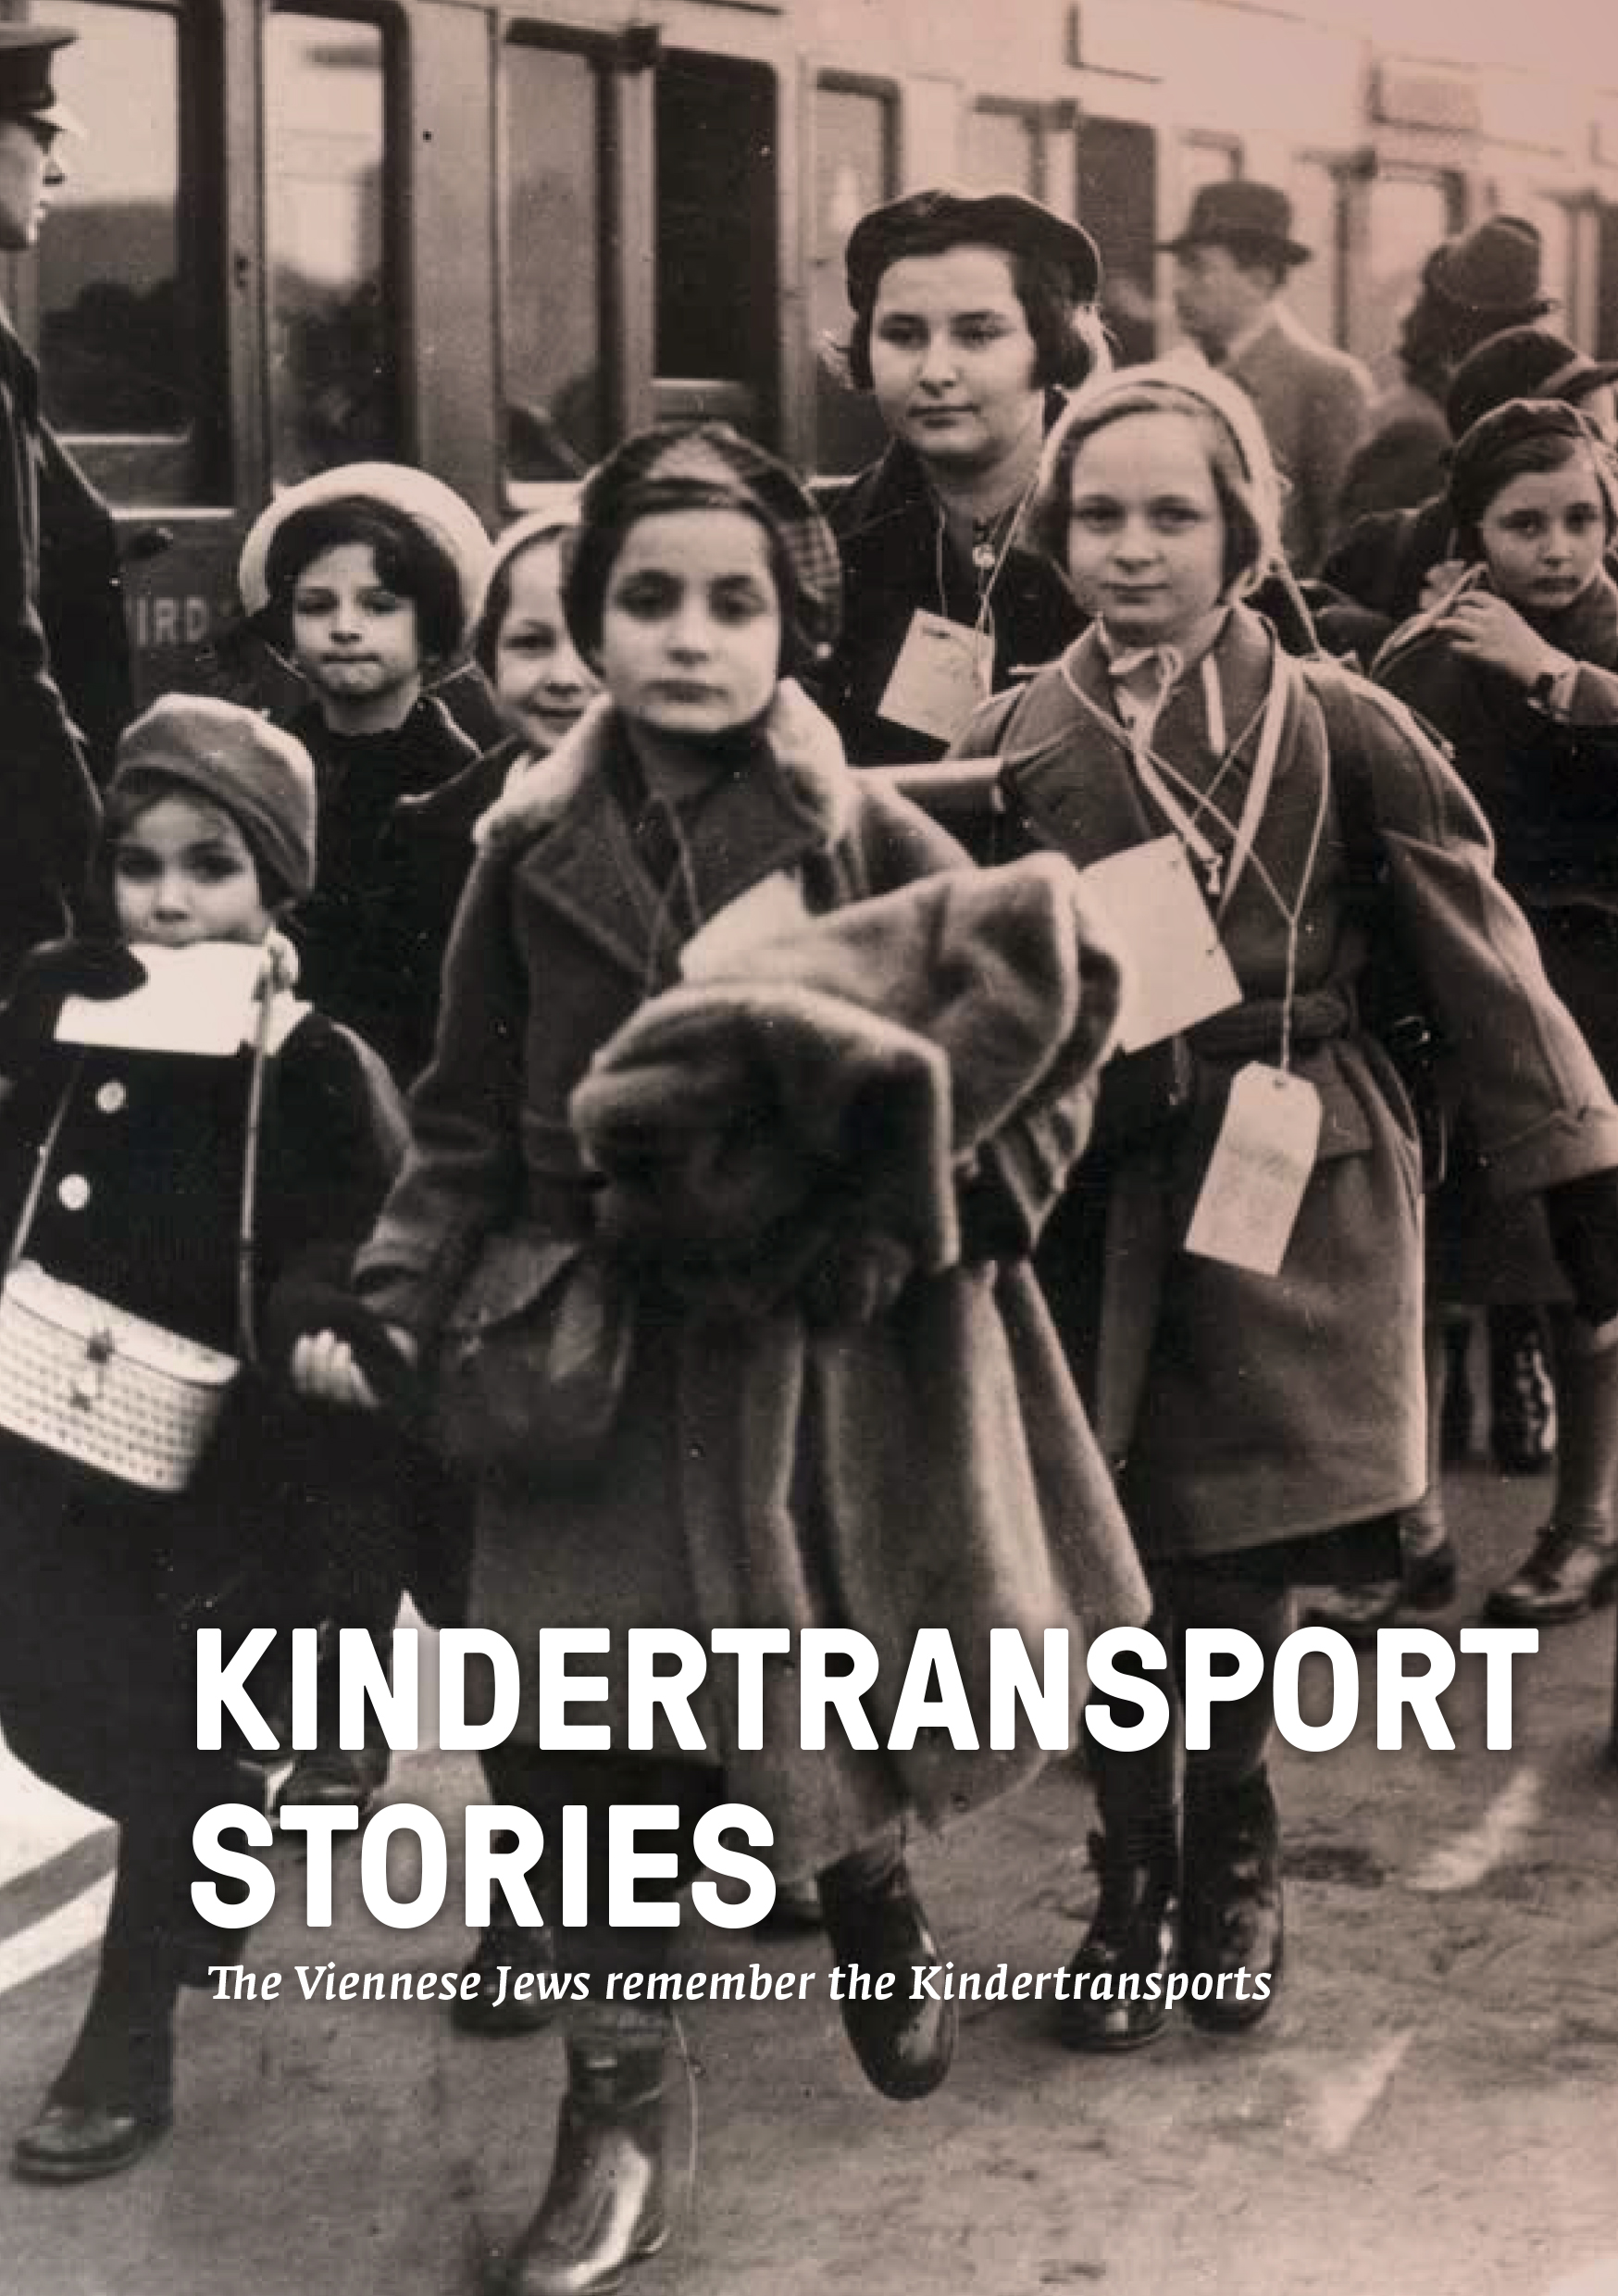 kindertransport_stories_front_page.jpg 